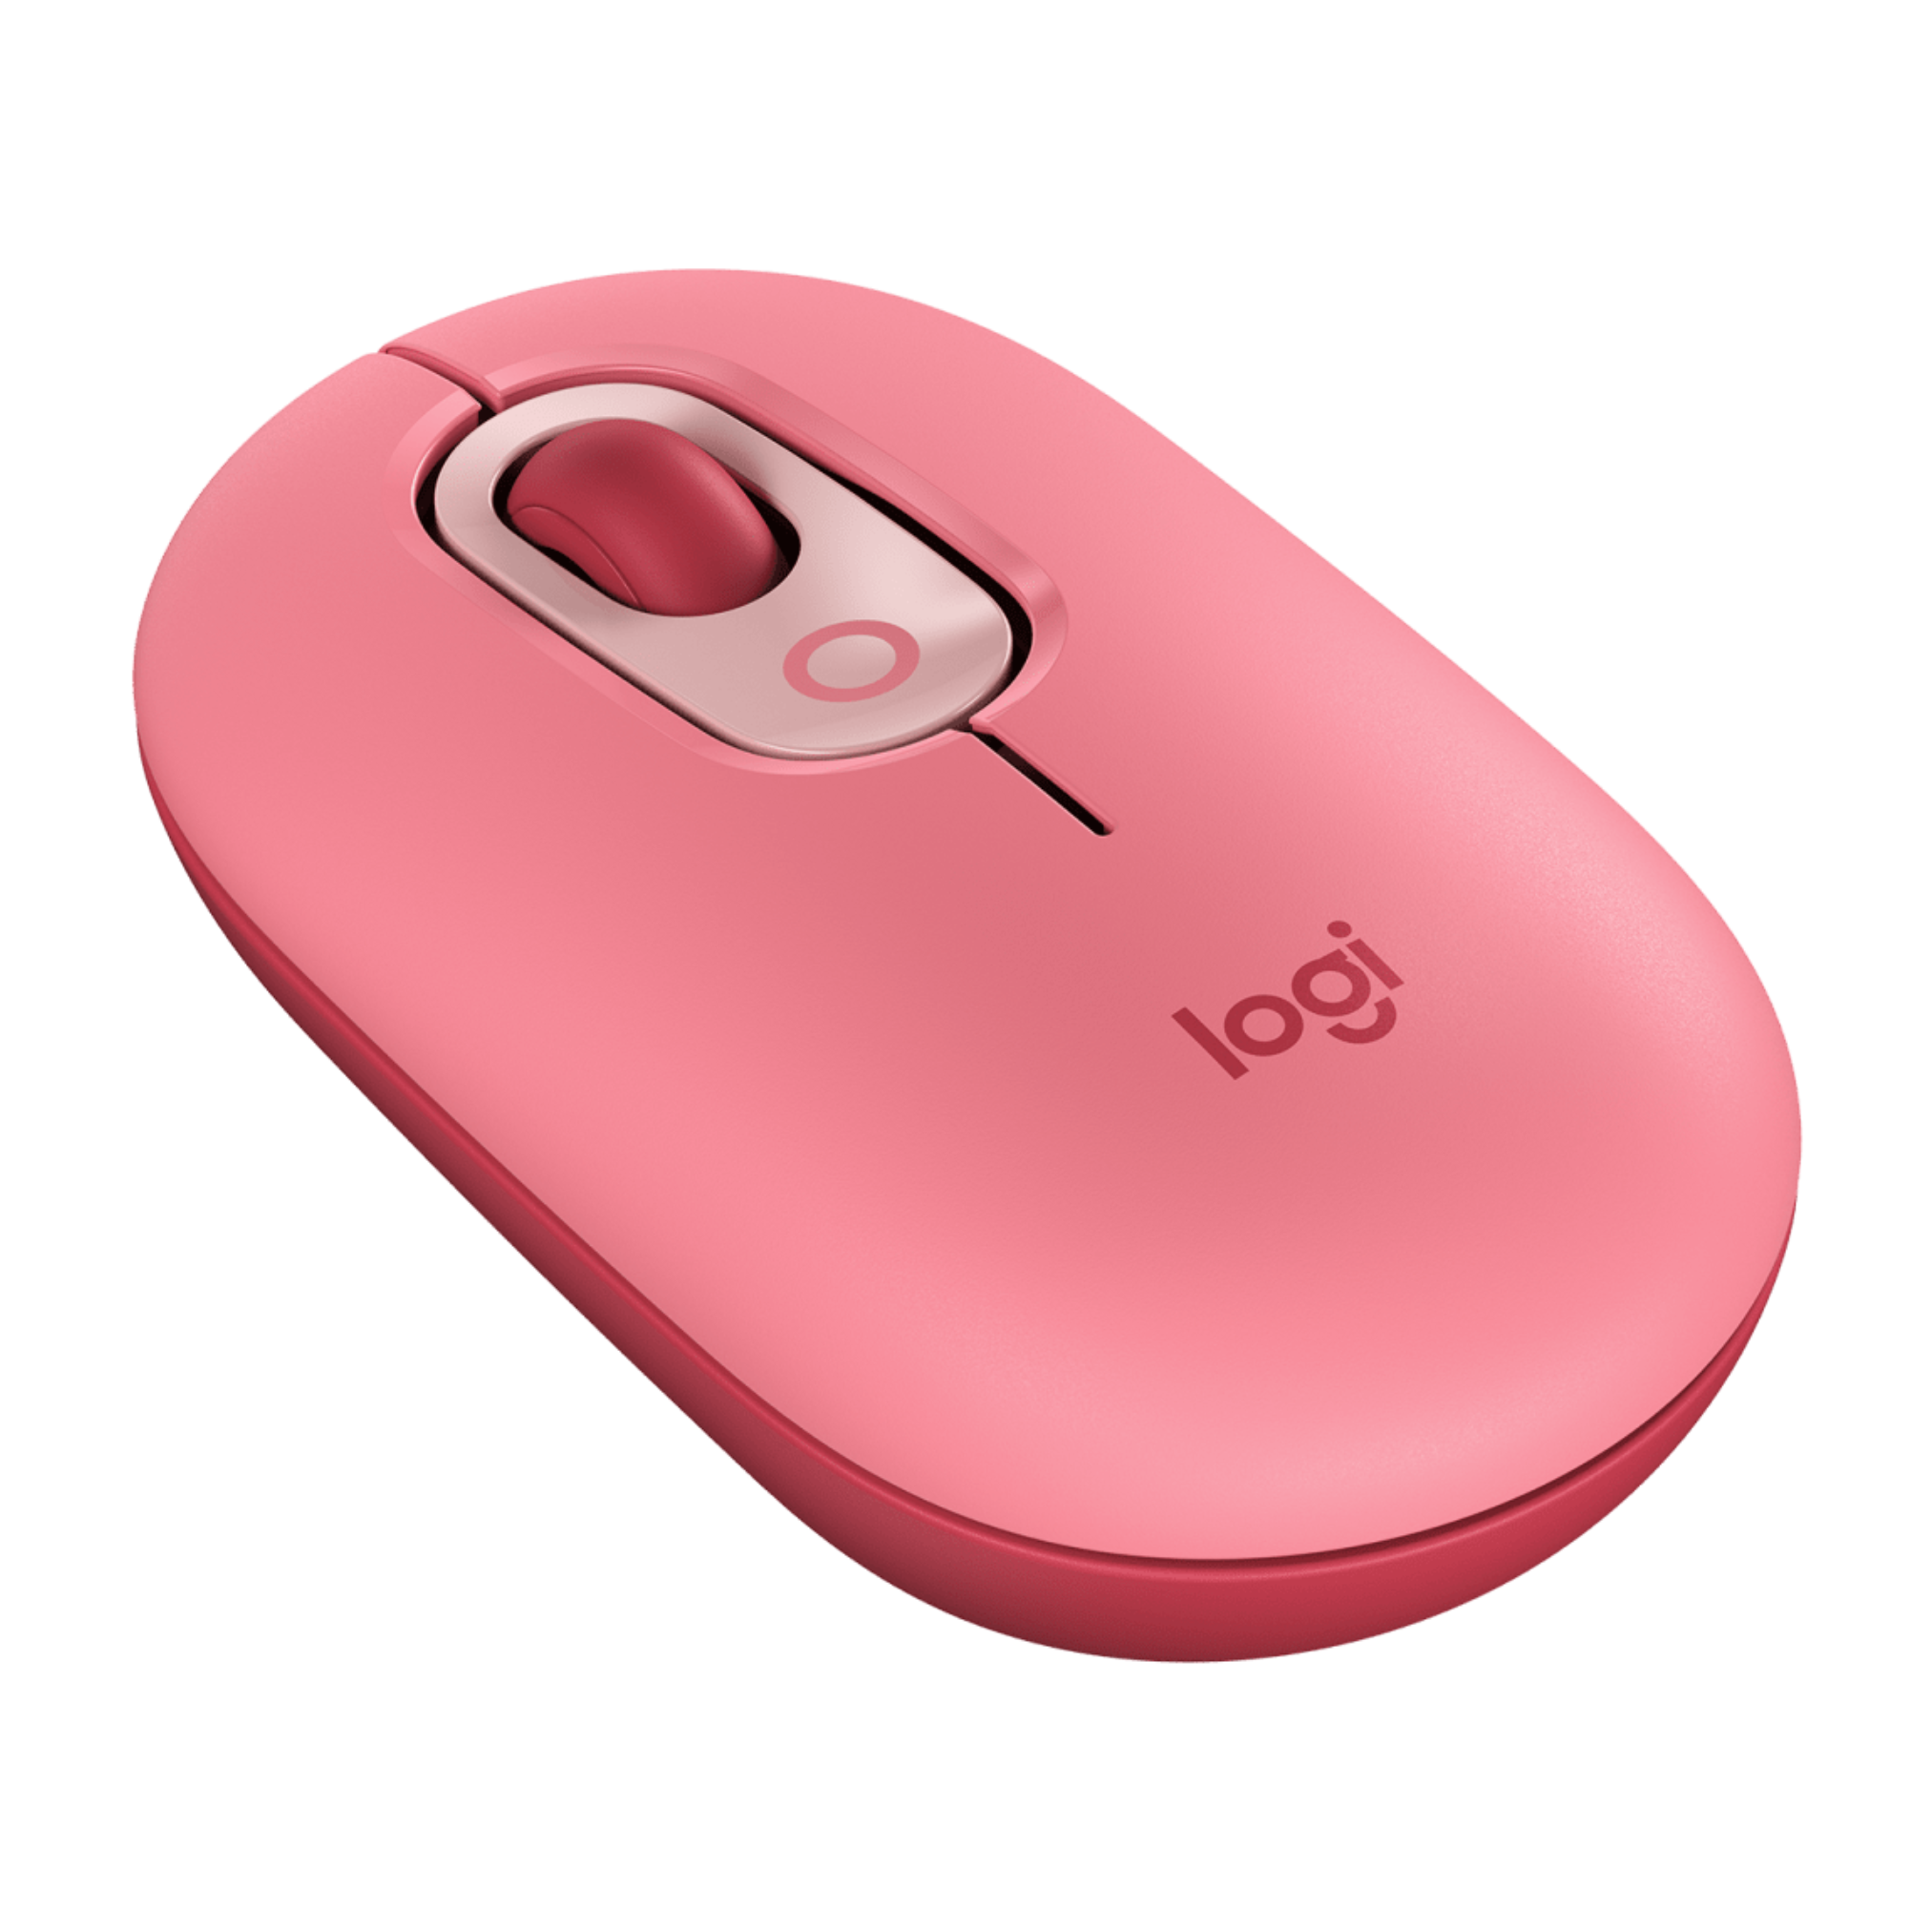 Mouse Bluetooth Logitech Pop Coral Rosa